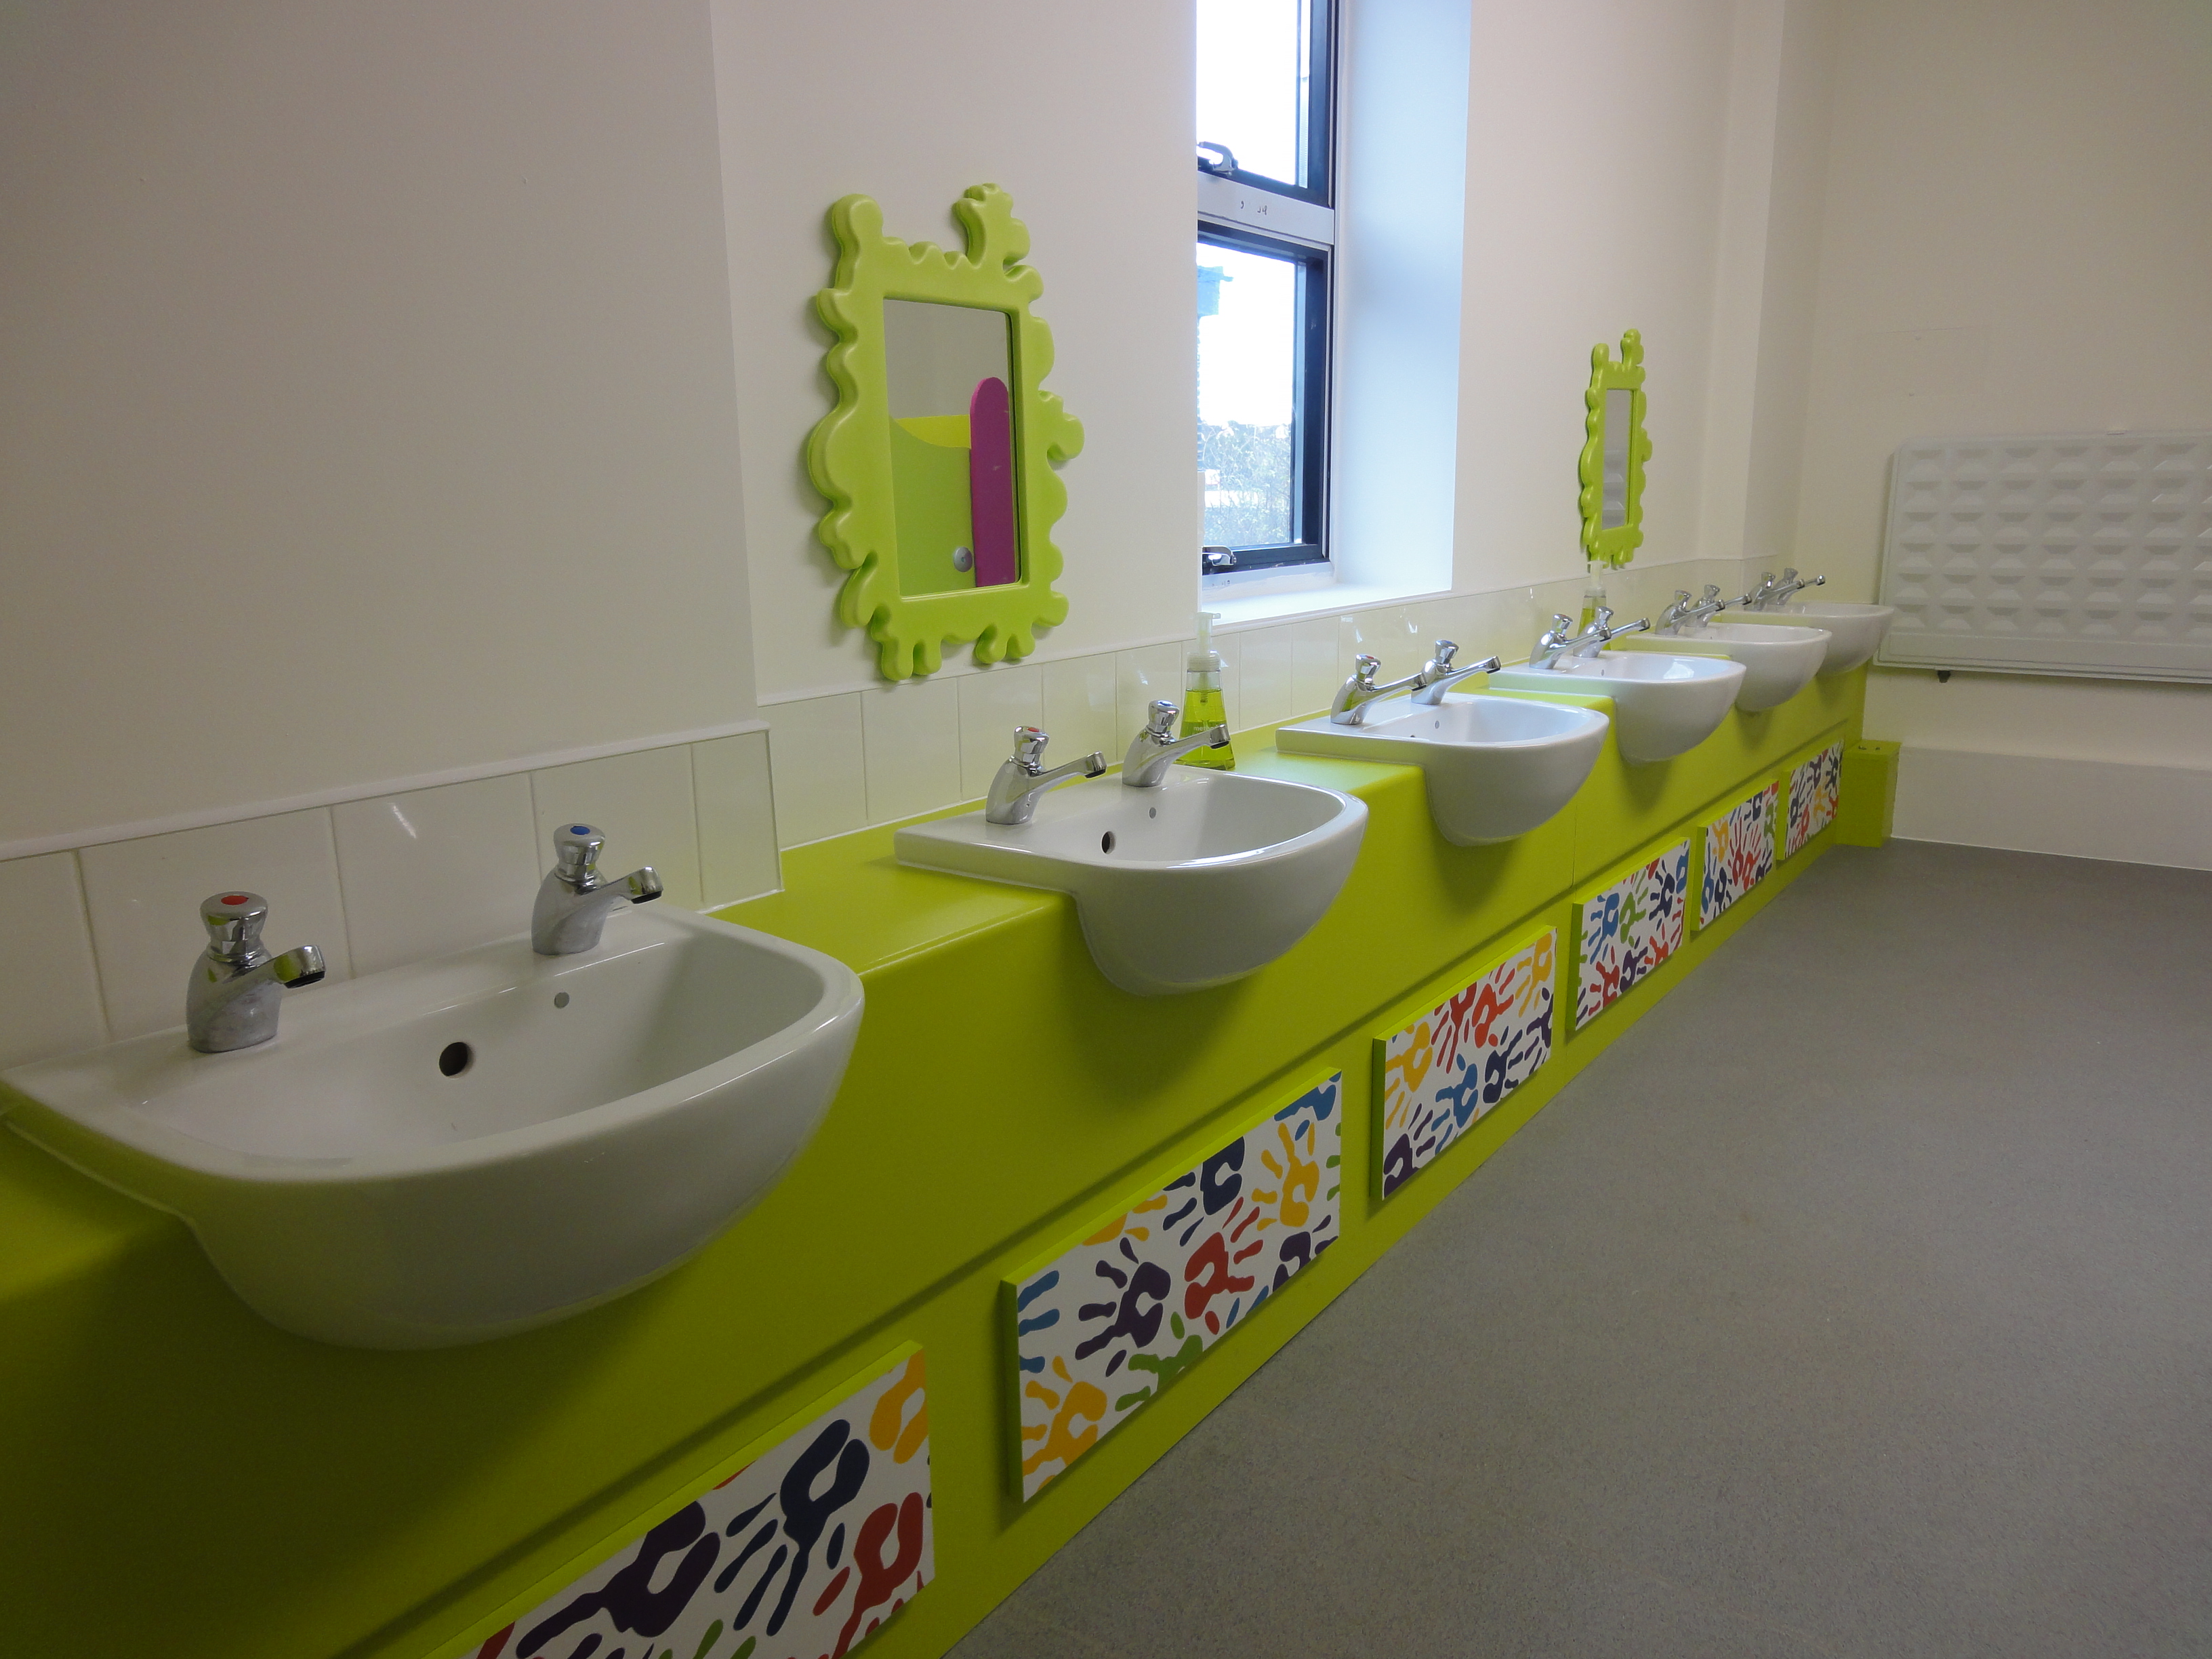 Les éviers pour pour enfants à la chouette school de Londres